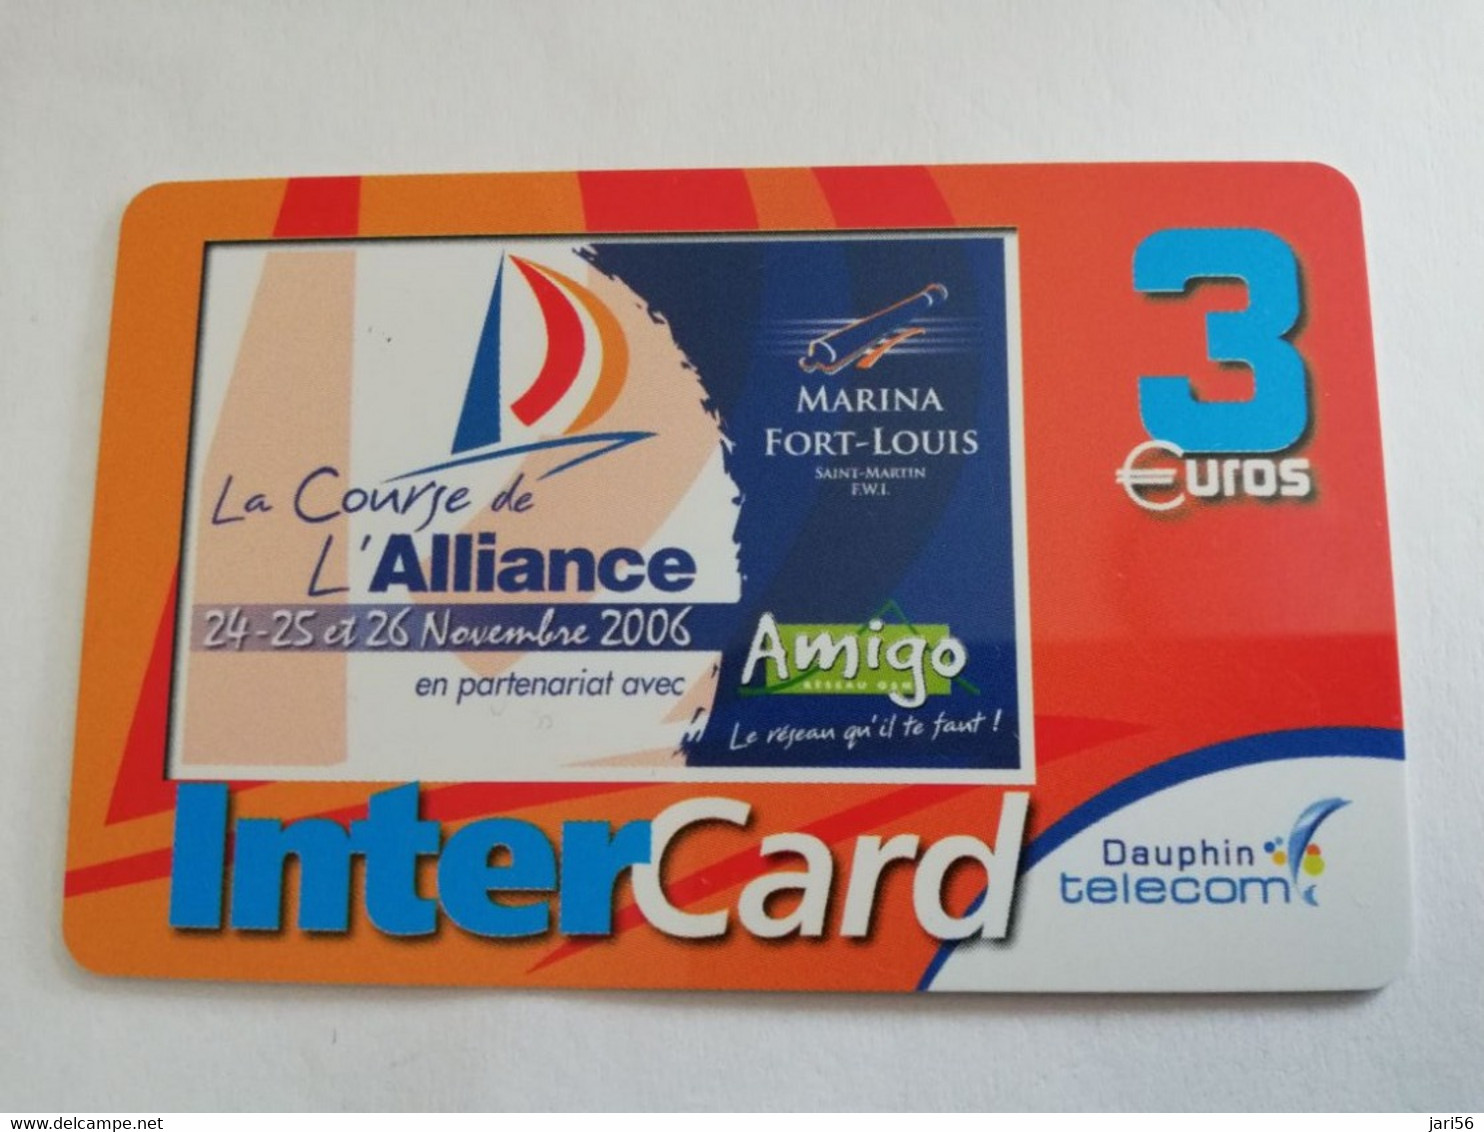 ST MARTIN / INTERCARD  3 EURO    LE COURSE DE ALLIANCE          NO 156   Fine Used Card    ** 6605 ** - Antillen (Frans)